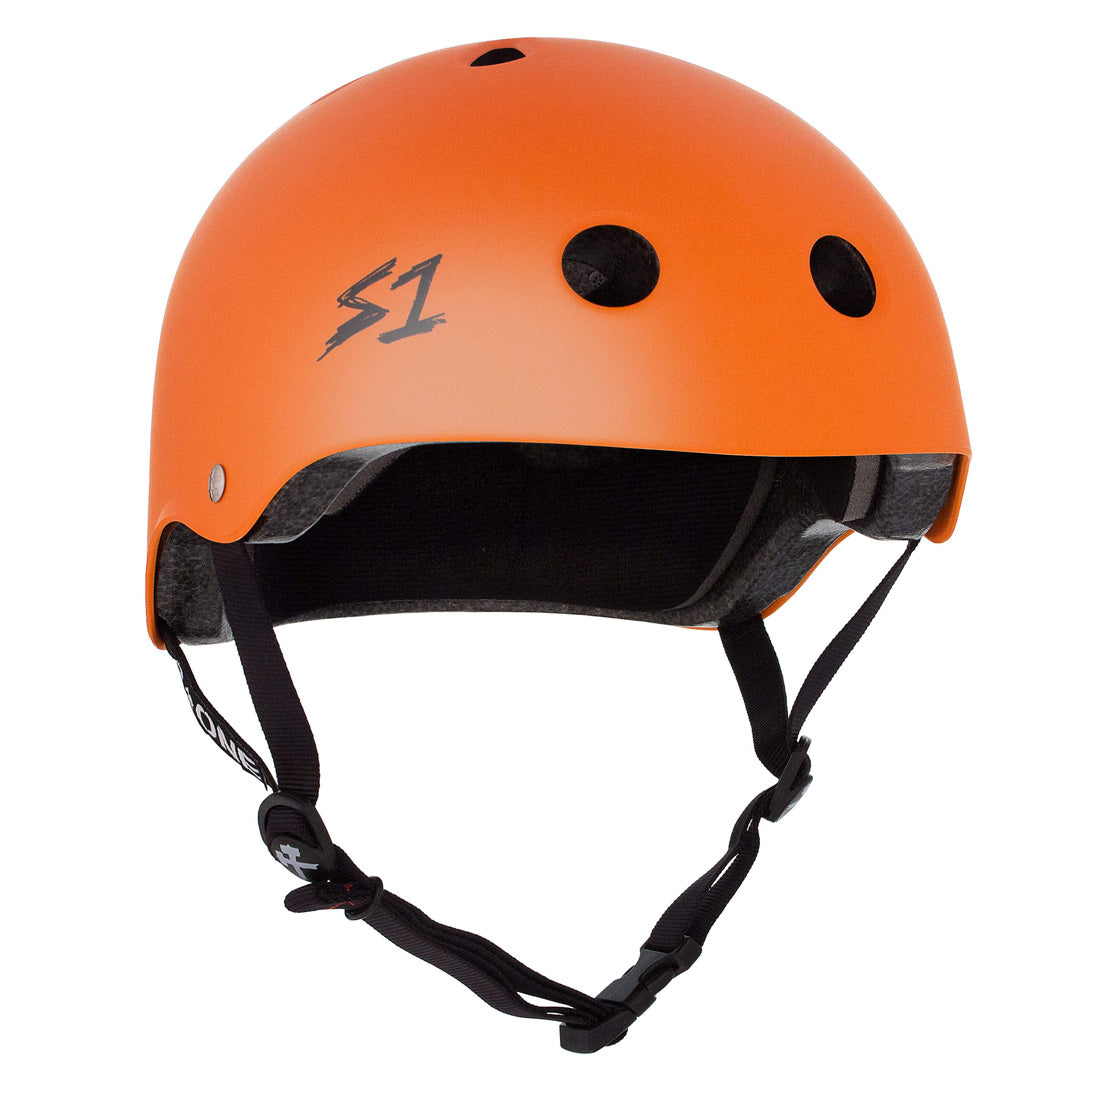 S-One Lifer Helmet - Orange Matte Helmets